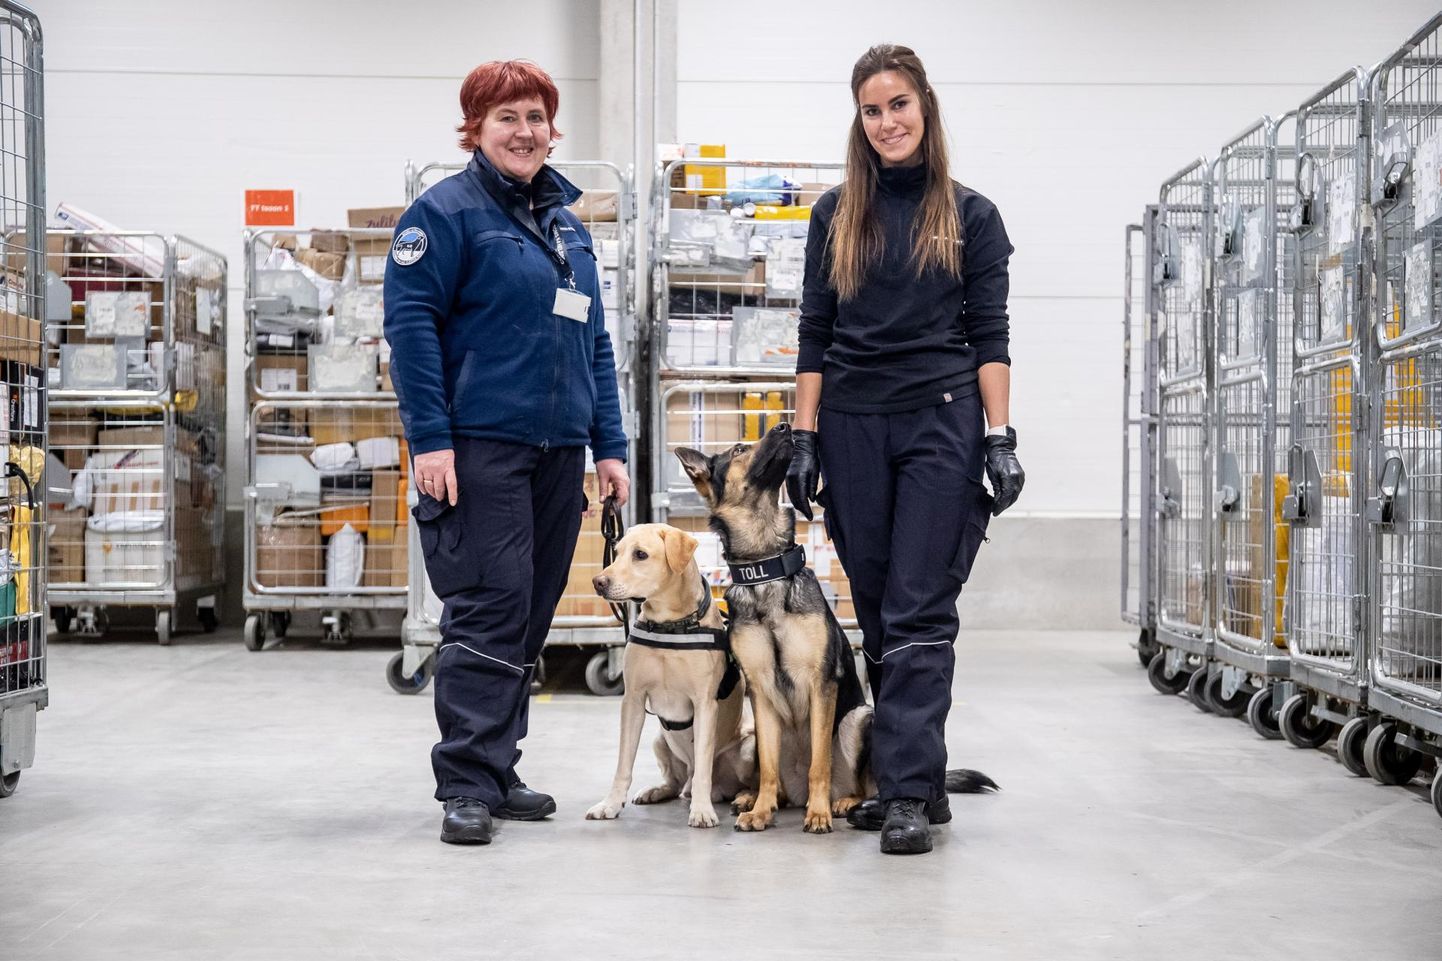 Tolliinspektorid-koerajuhid Bärbel Parm (vasakul) ja Triin Atla oma töökaaslaste, Morgani ja Sofiga Tallinna lähedal Omniva logistikakeskuses.

 